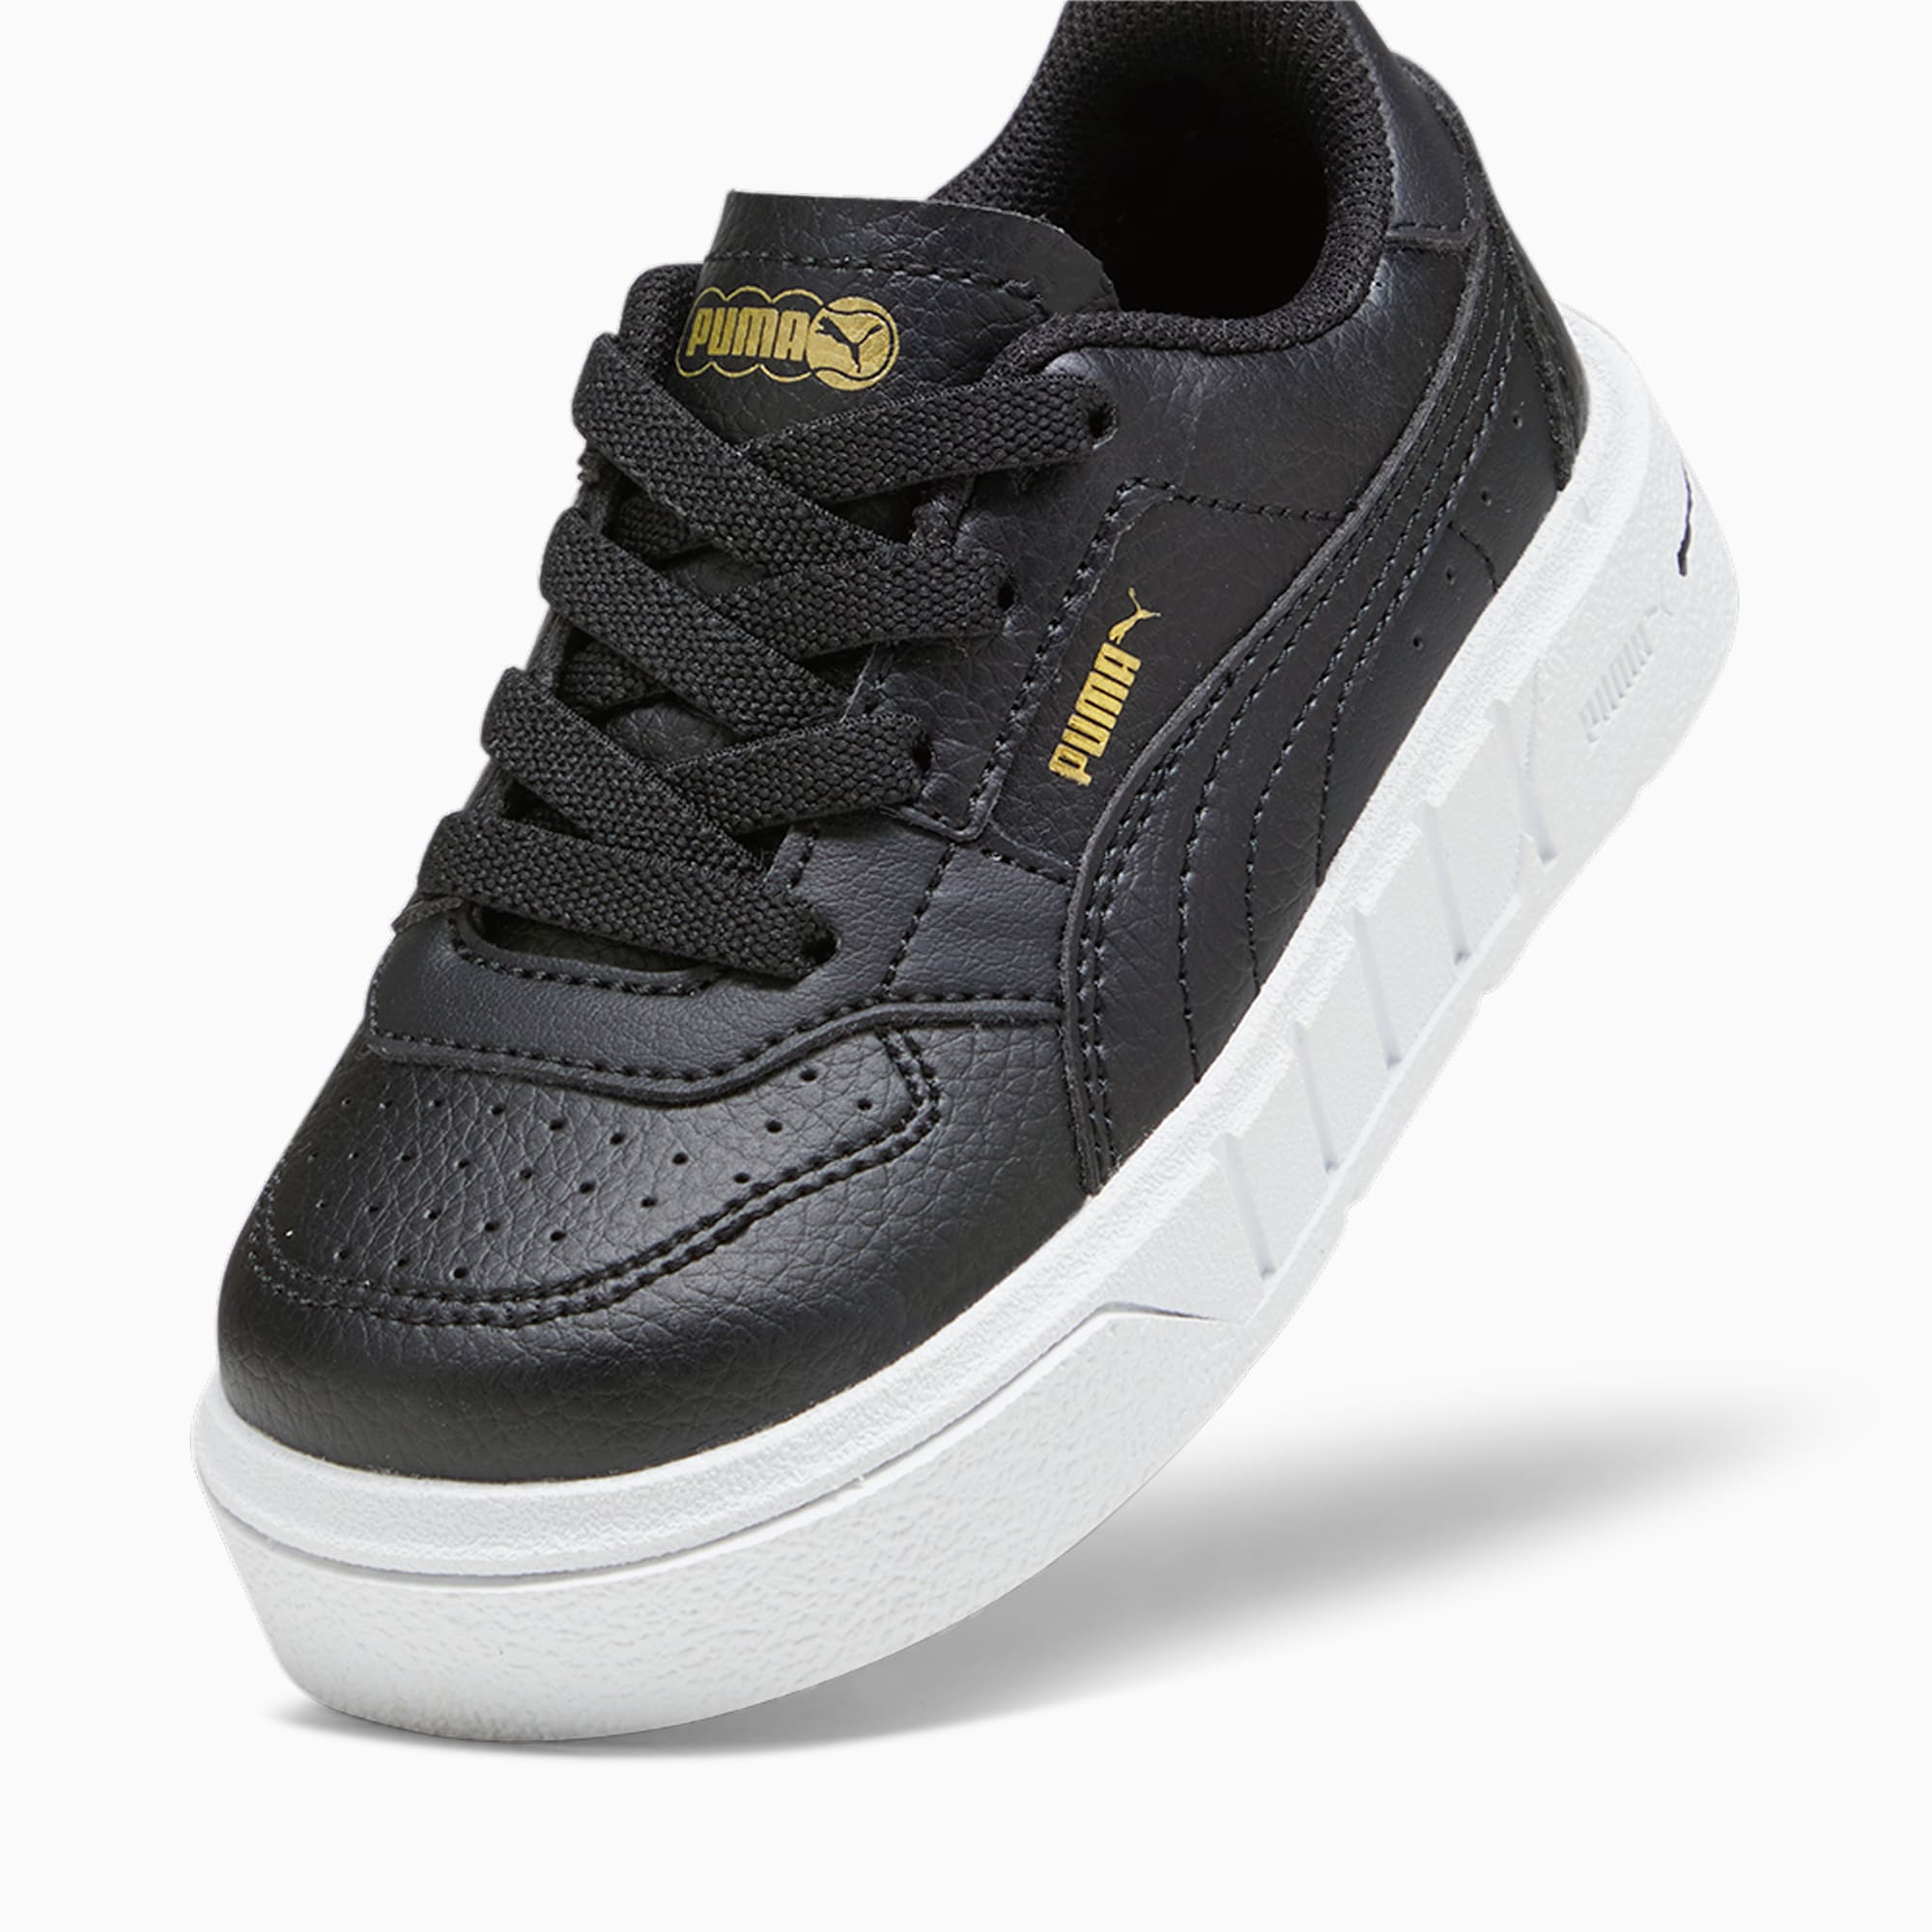 Scarpe Sneaker PUMA Cali Court Leather Per Bimba Ai Primi Passi, Bianco/Nero/Altro